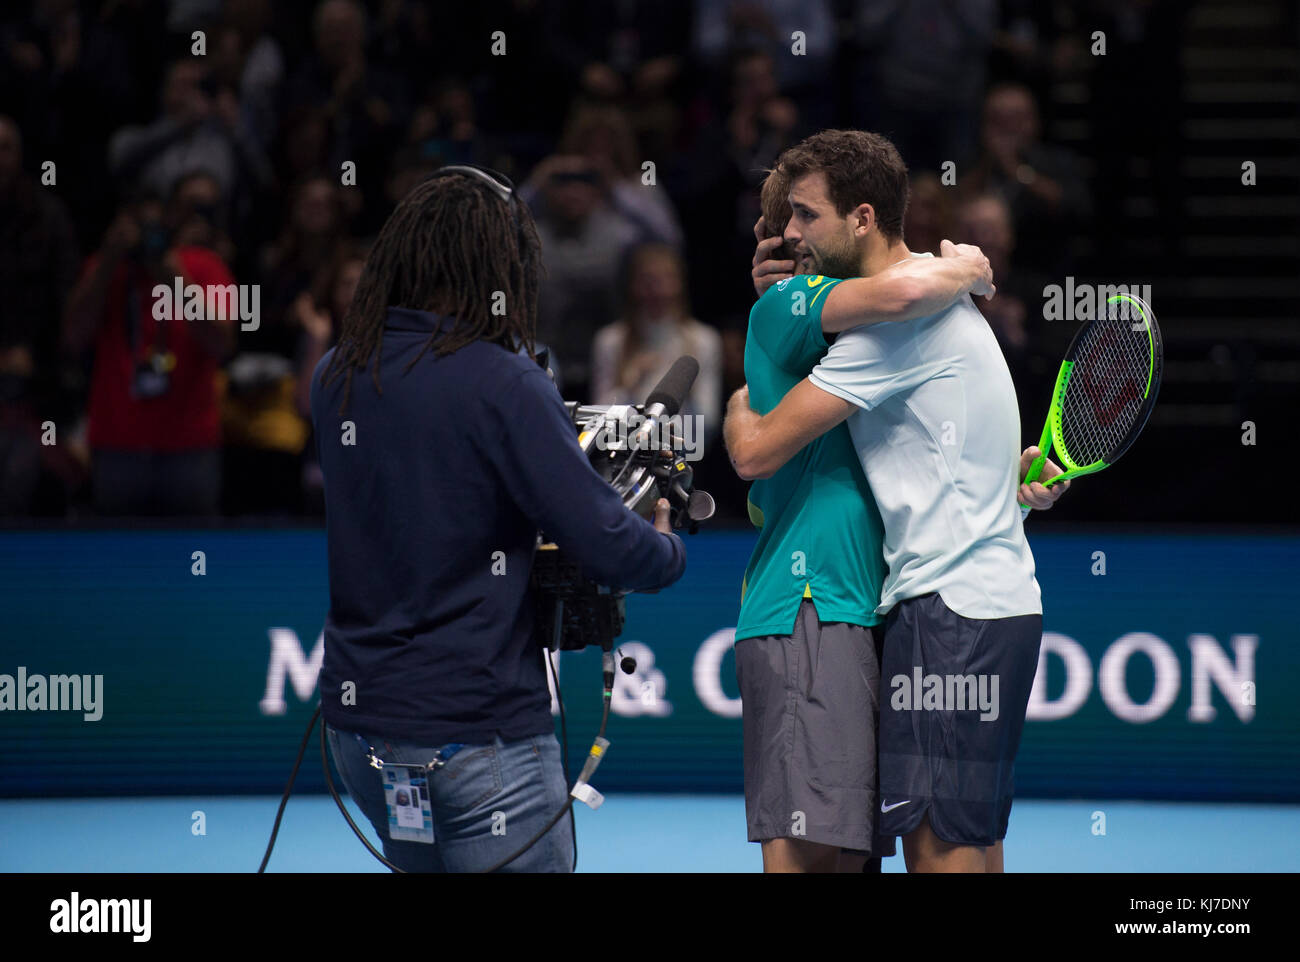 19 novembre 2017. David Goffin et Grigor Dimitrov étreignent après le match de tennis Nitto ATP Singles de Dimitrov. Crédit: Malcolm Park/Alay Banque D'Images